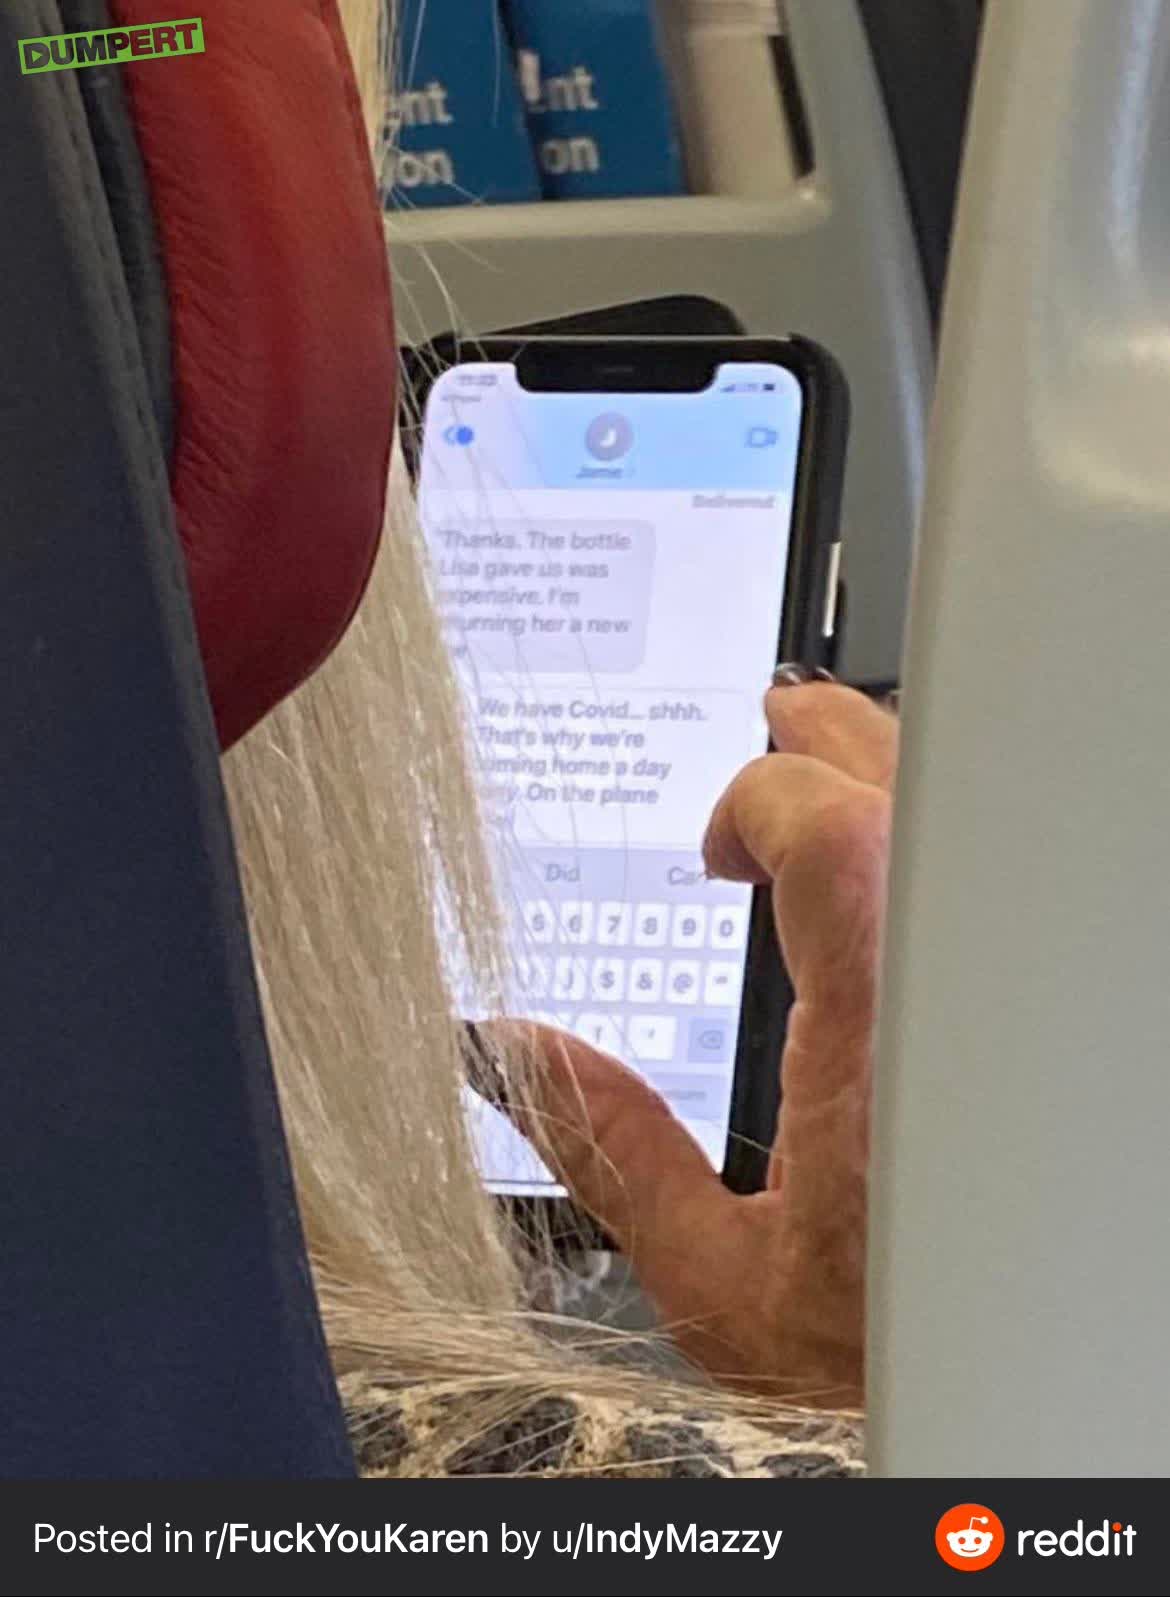 Vrouw appt in vliegtuig